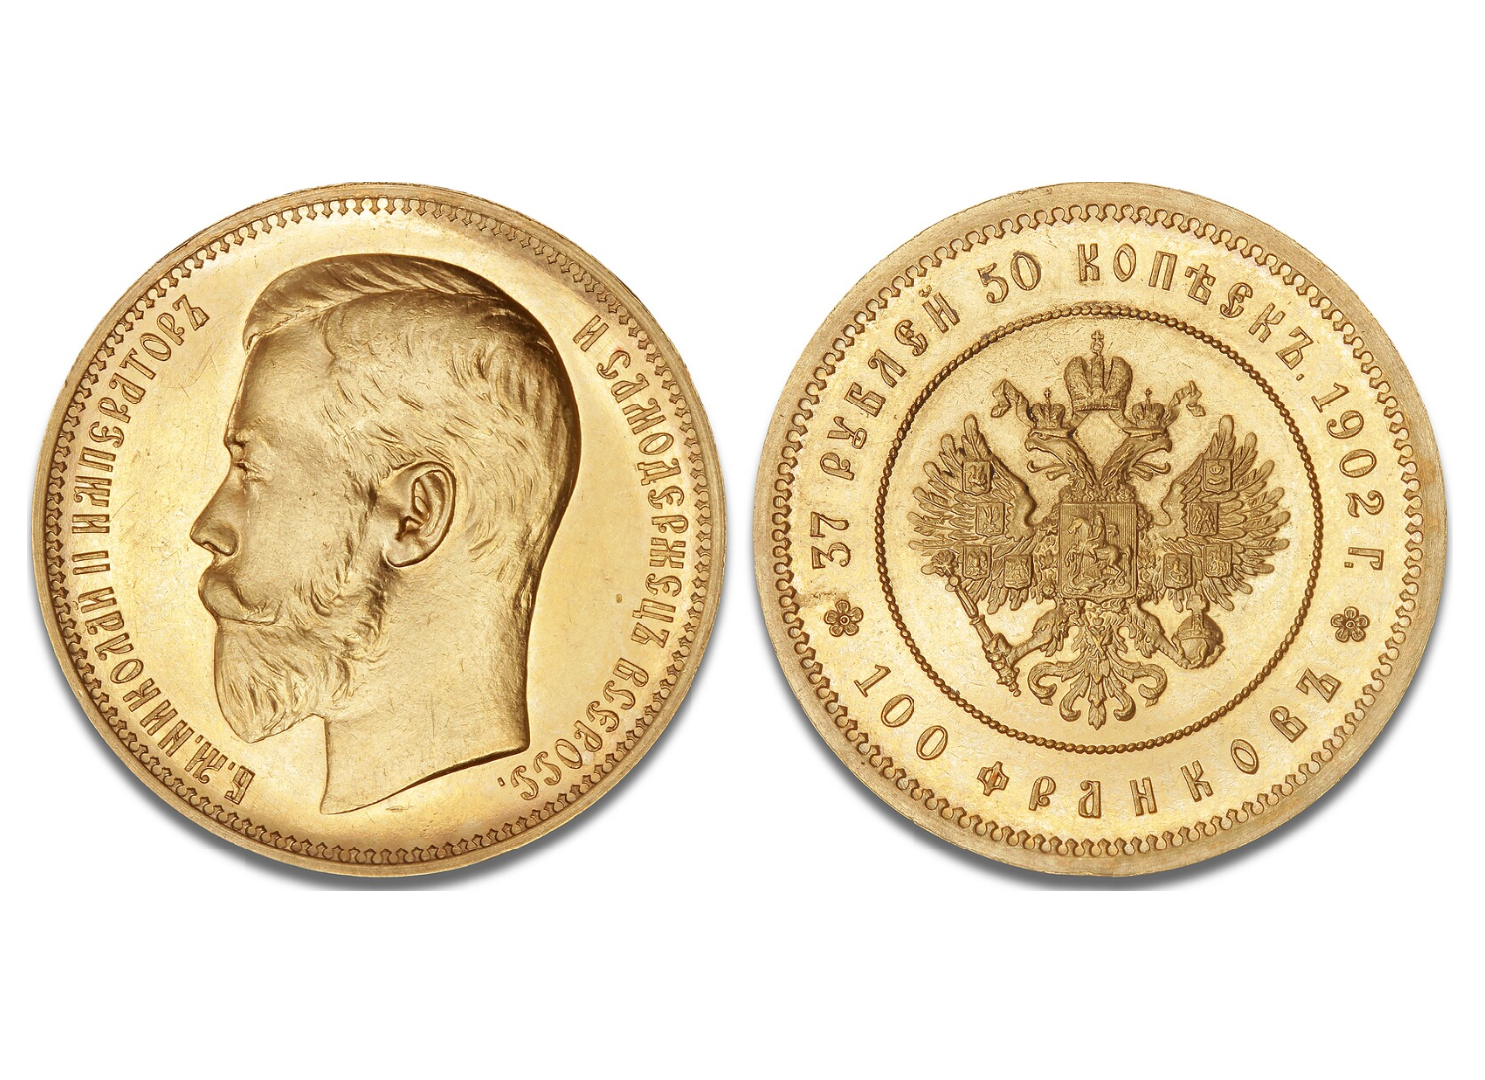 Тридцать семь рублей пятьдесят копеек — сто франков, 1902 / фото Bruun Rasmussen